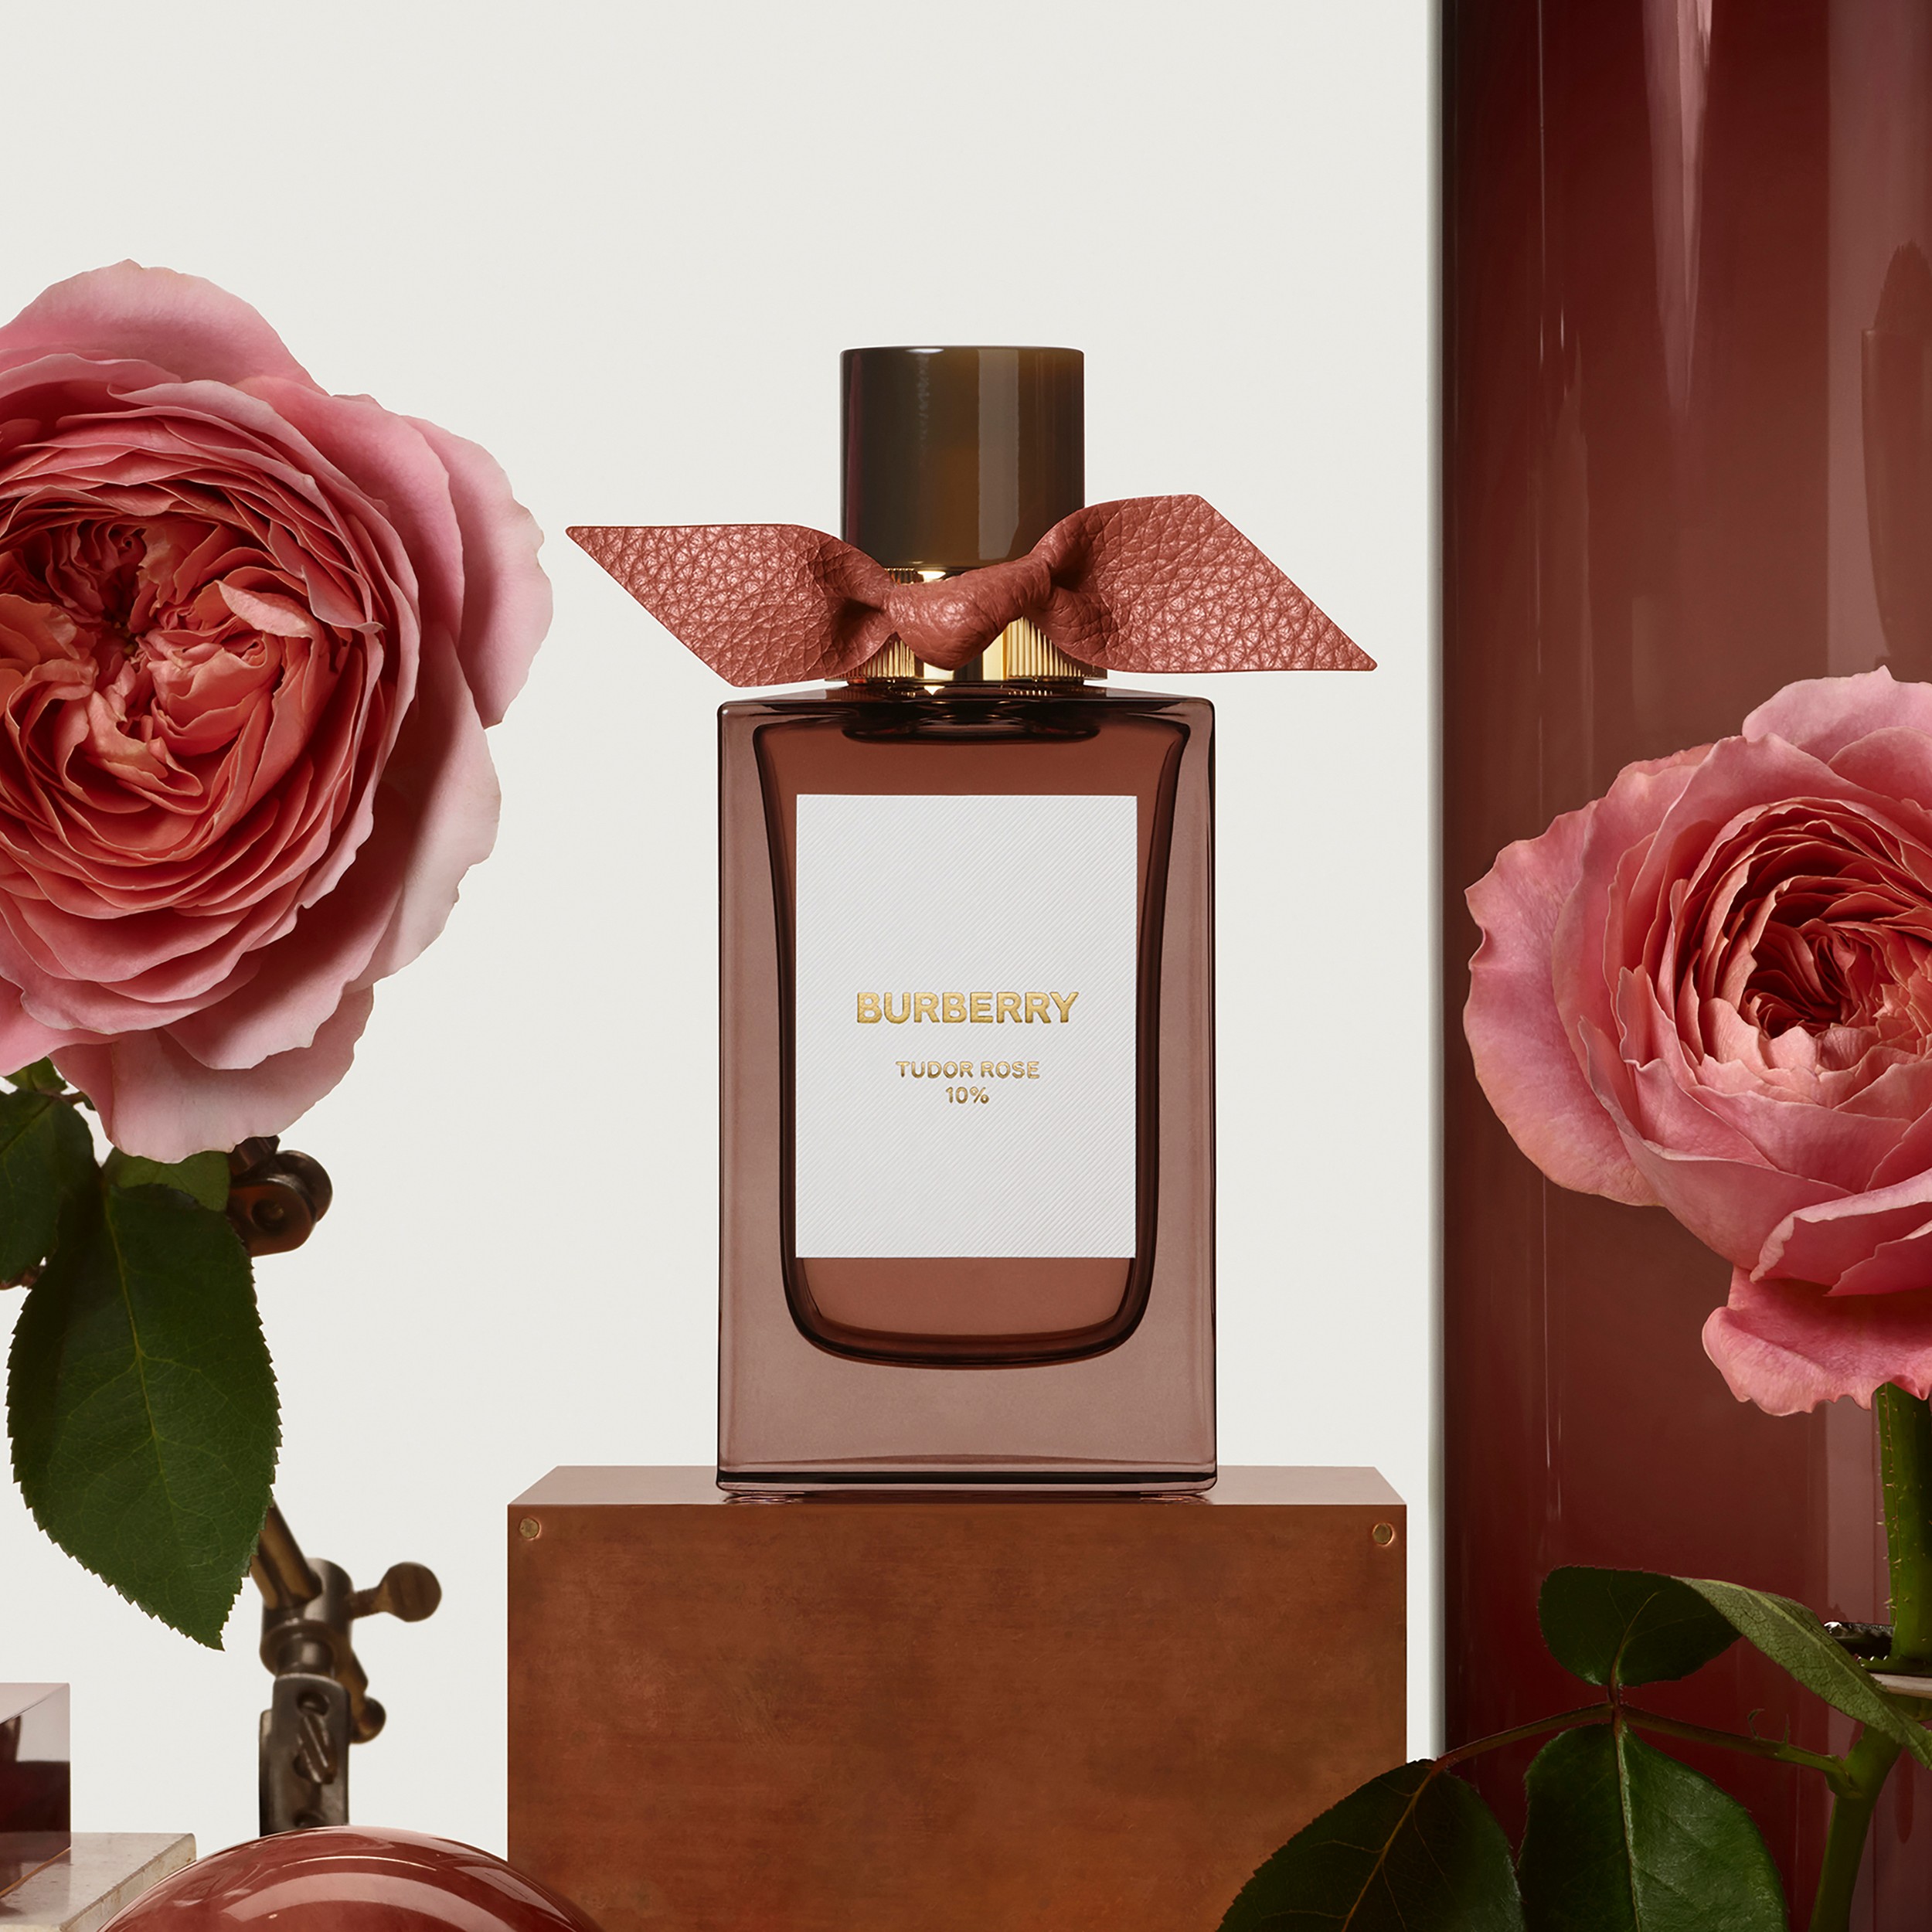 Burberry Signatures Eau de Parfum de 100 ml - Tudor Rose | Burberry® oficial - 2